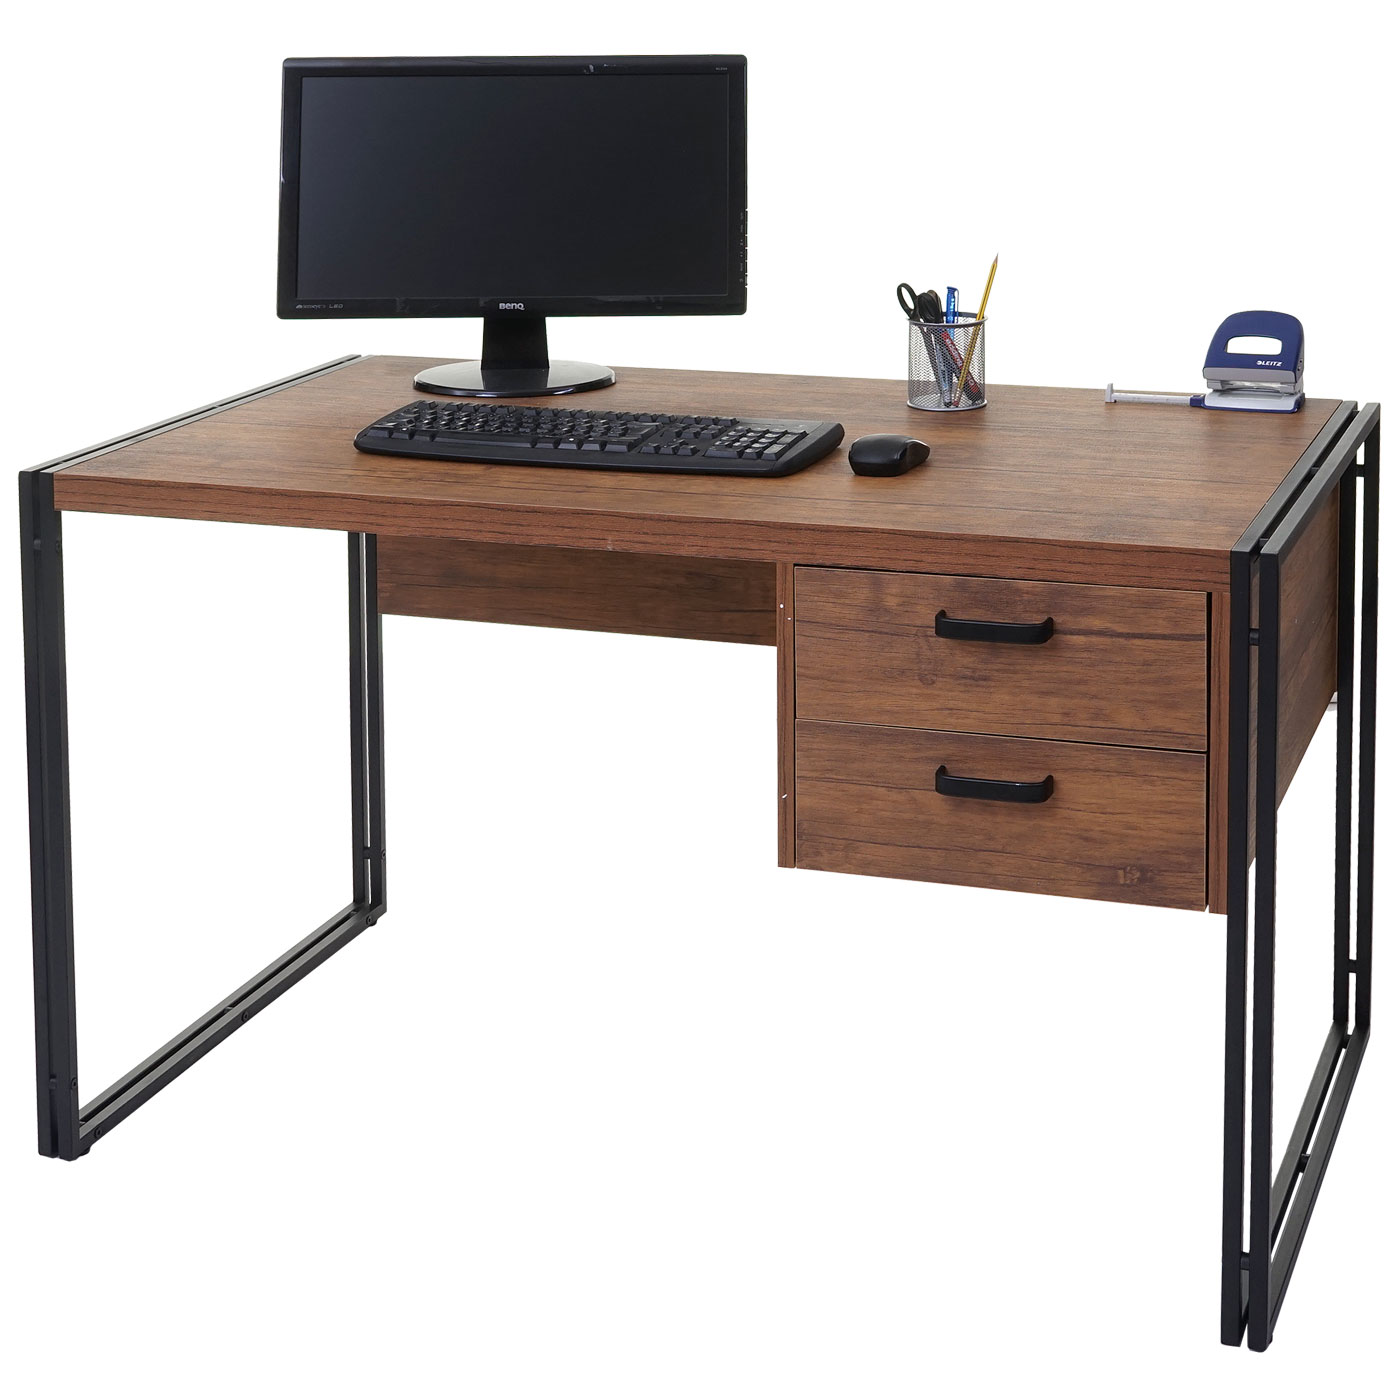 Стол 120 Activa Metal. Компьютерный стол. Письменный столик. Стол компьютерный офисный.